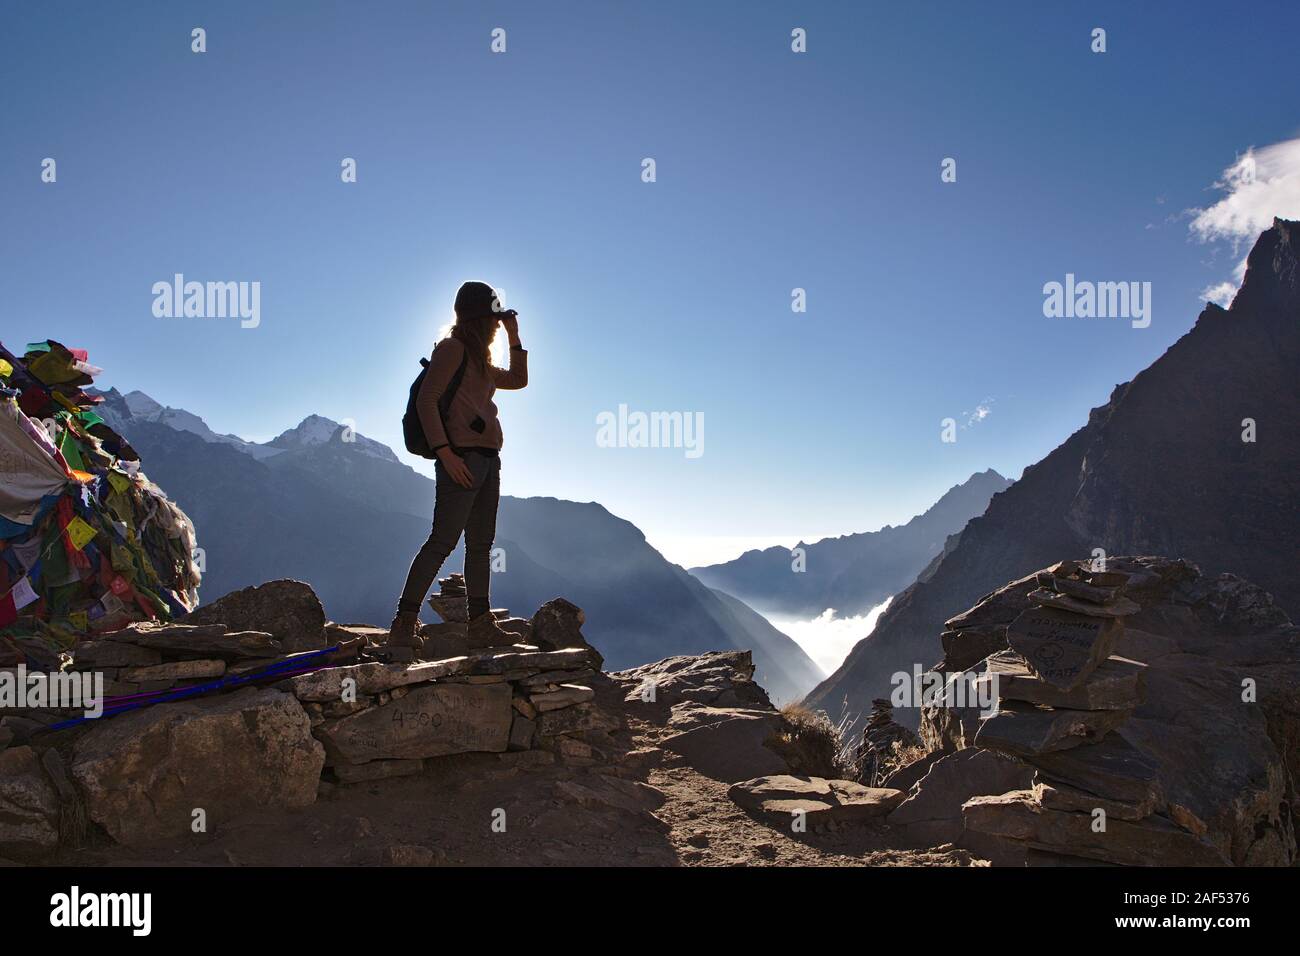 Silhouette di donna occidentale sulla cima di una montagna in Nepal con cielo blu chiaro Foto Stock